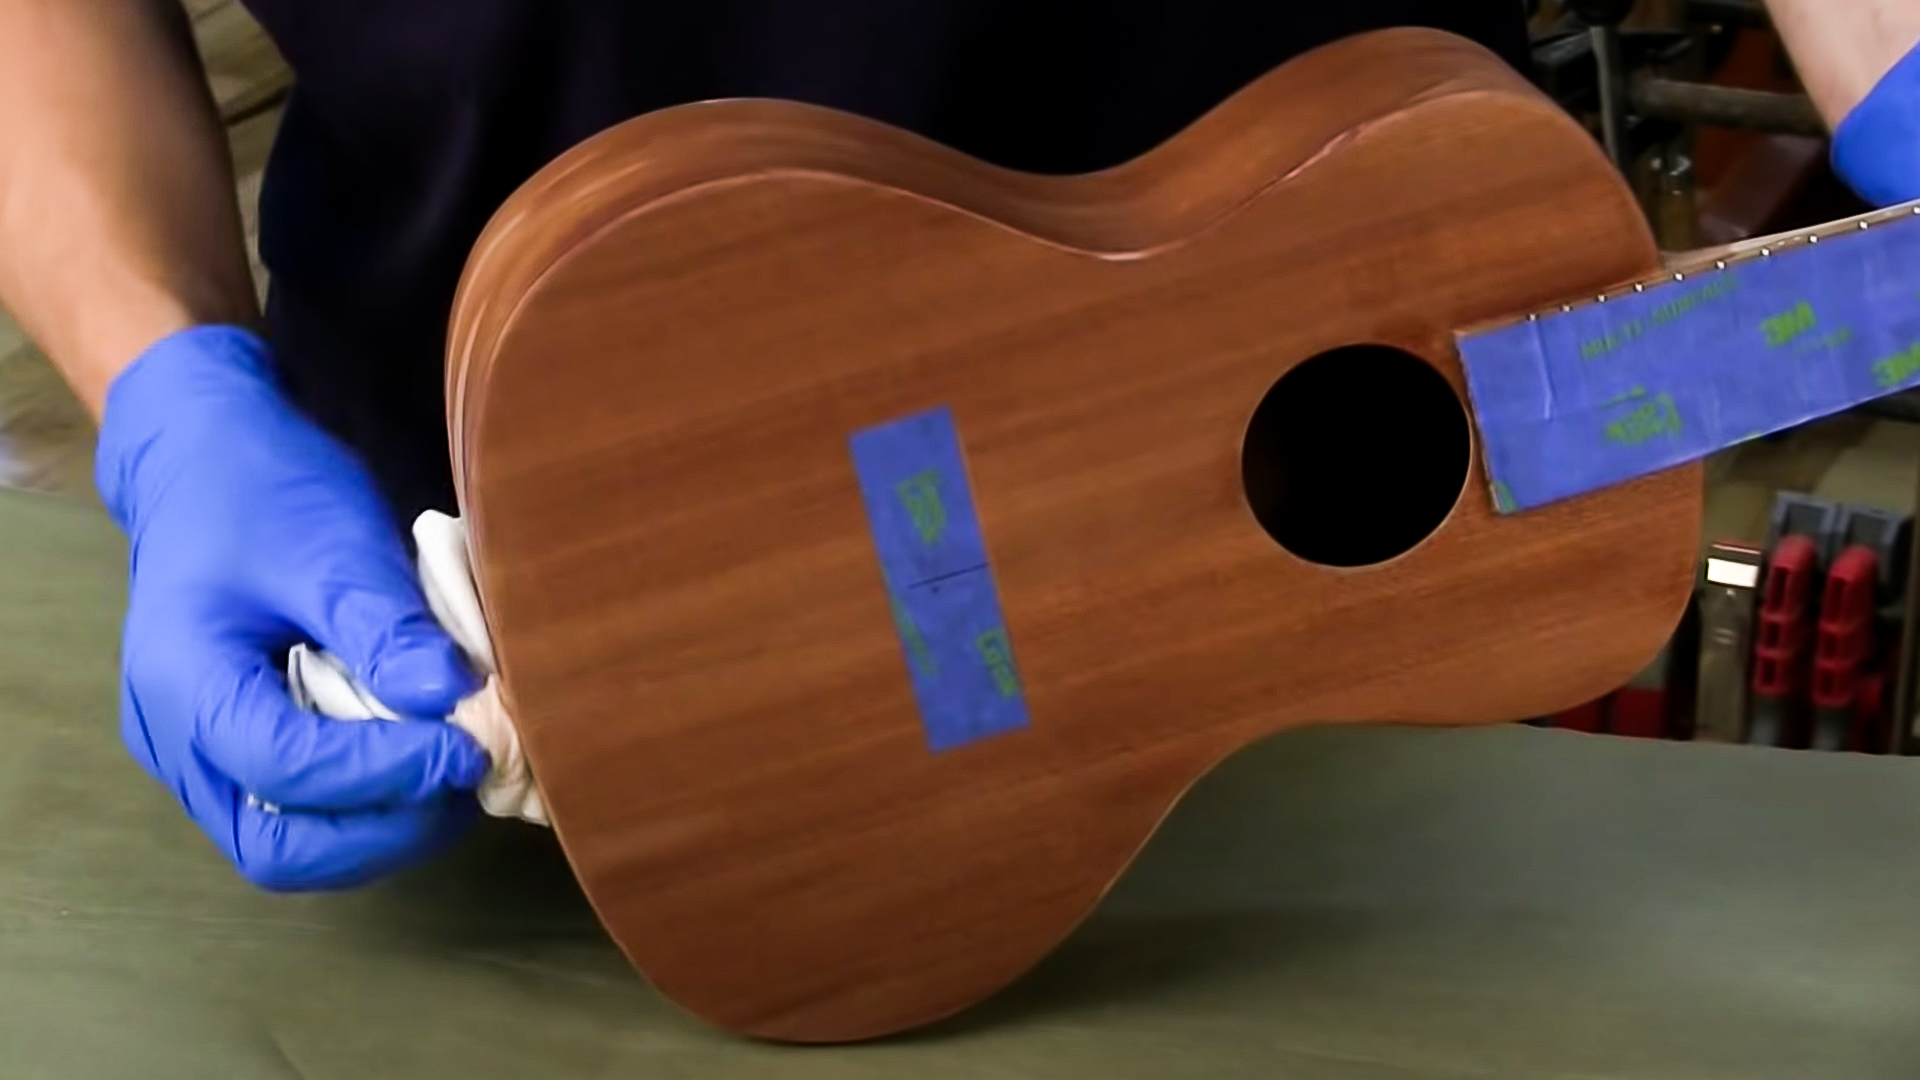 Hands wiping finish coat on ukulele body with rag